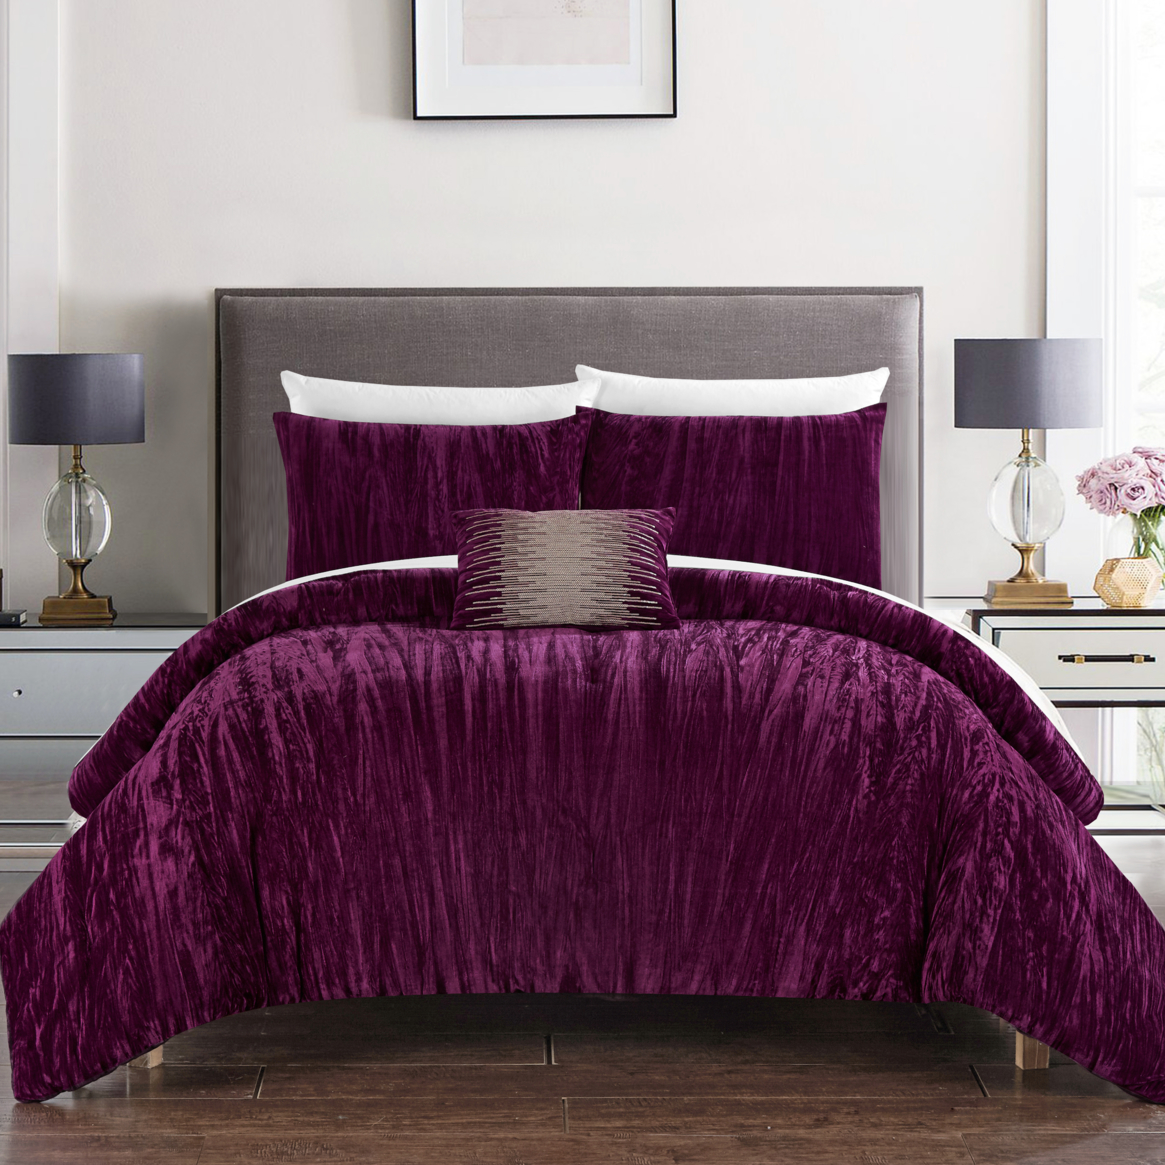 Merieta 8 Piece Comforter Set Crinkle Crushed Velvet Bed In A Bag Bedding - Plum, Queen